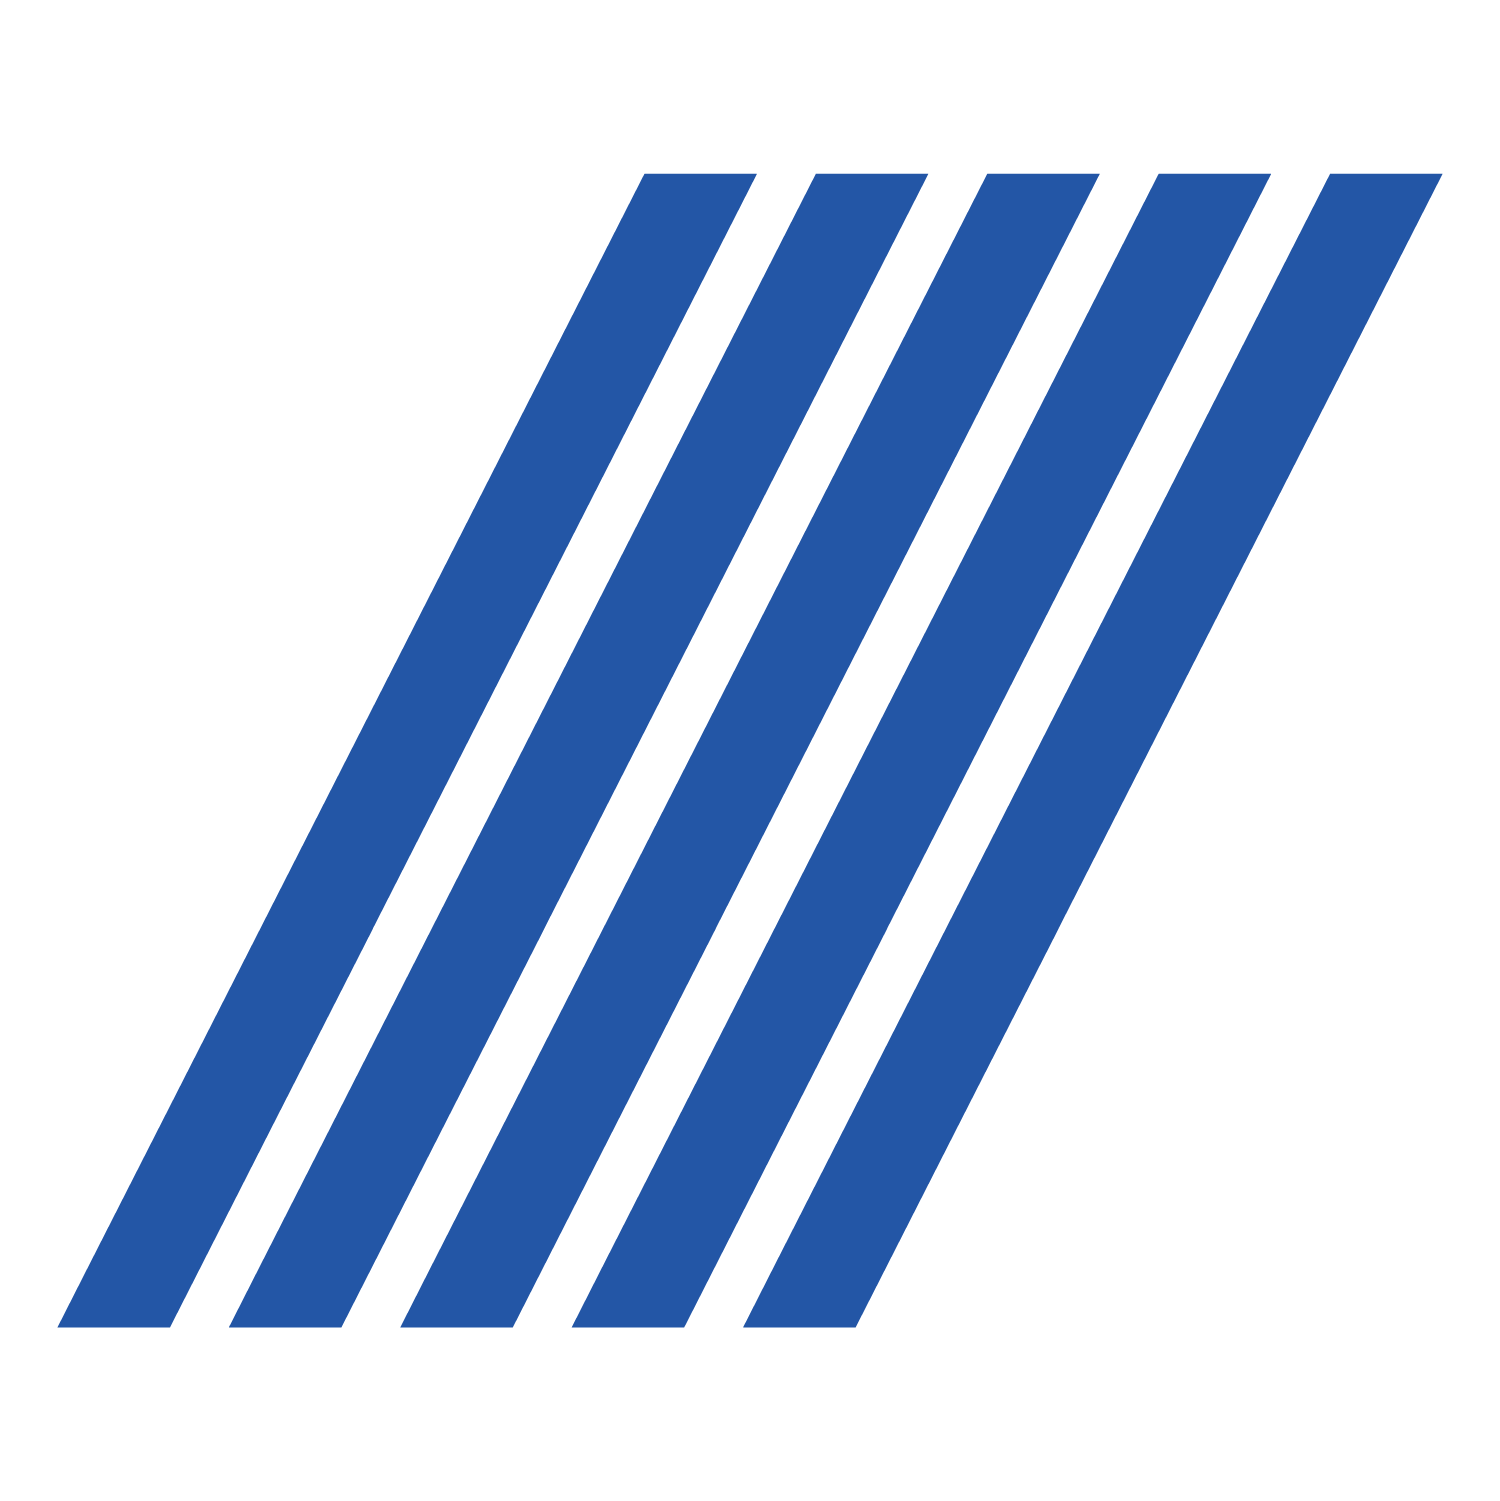 Five blue slanted vertical lines